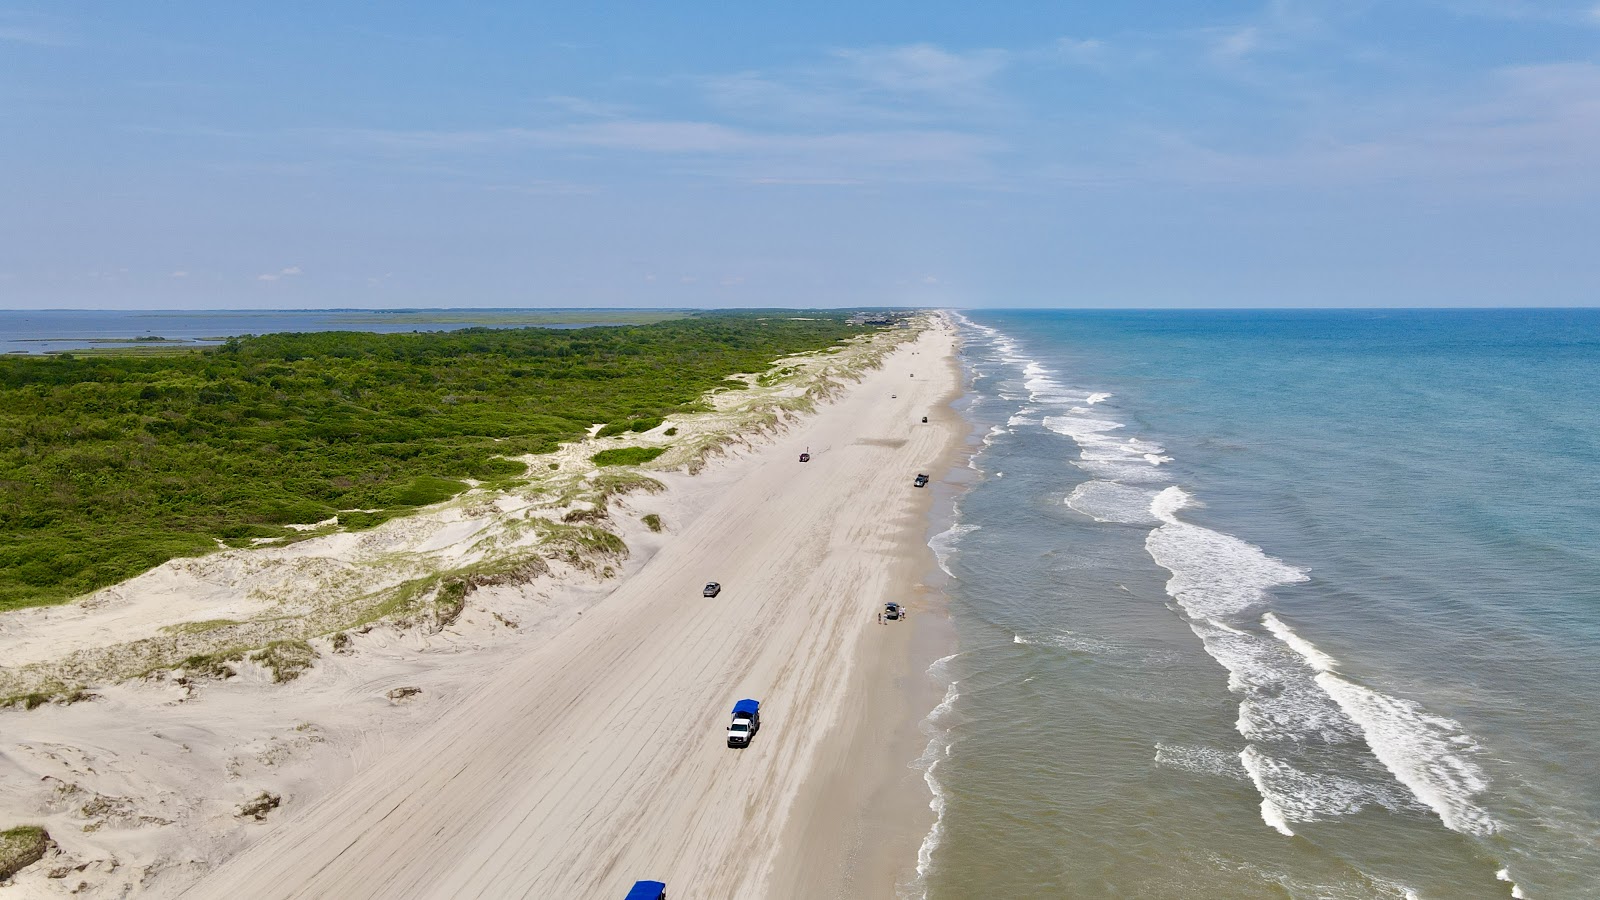 Zdjęcie Corolla beach II z powierzchnią jasny piasek